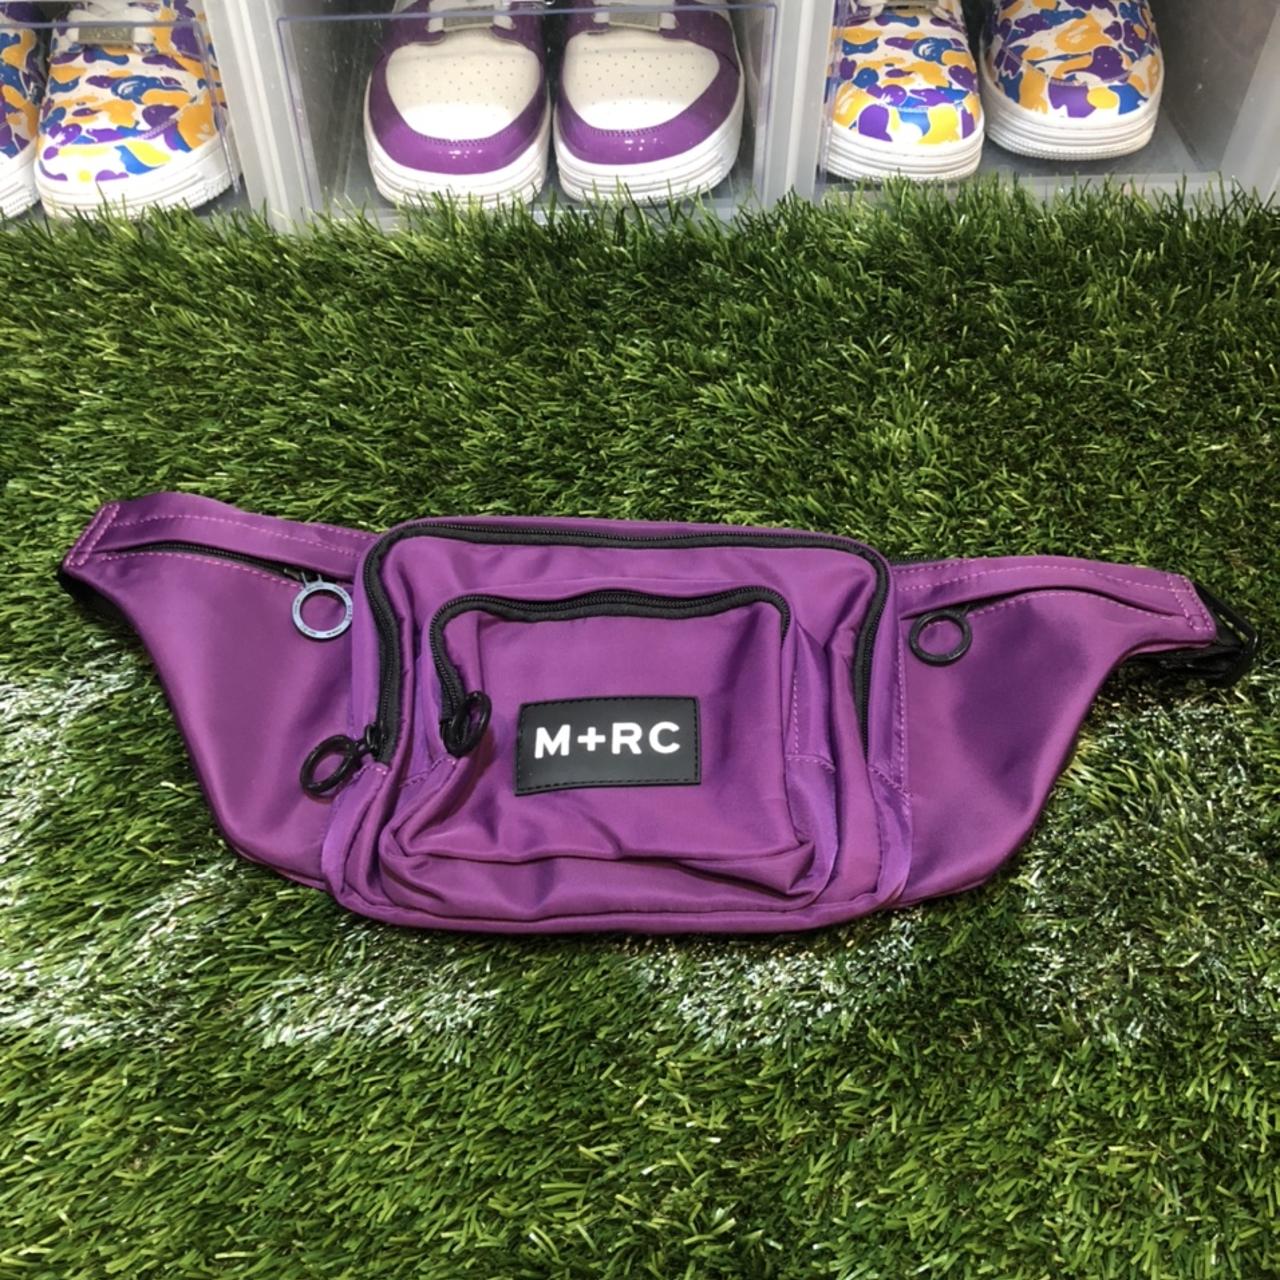 Marchenoir Ltd Purple Waist Bag, Shipped through...